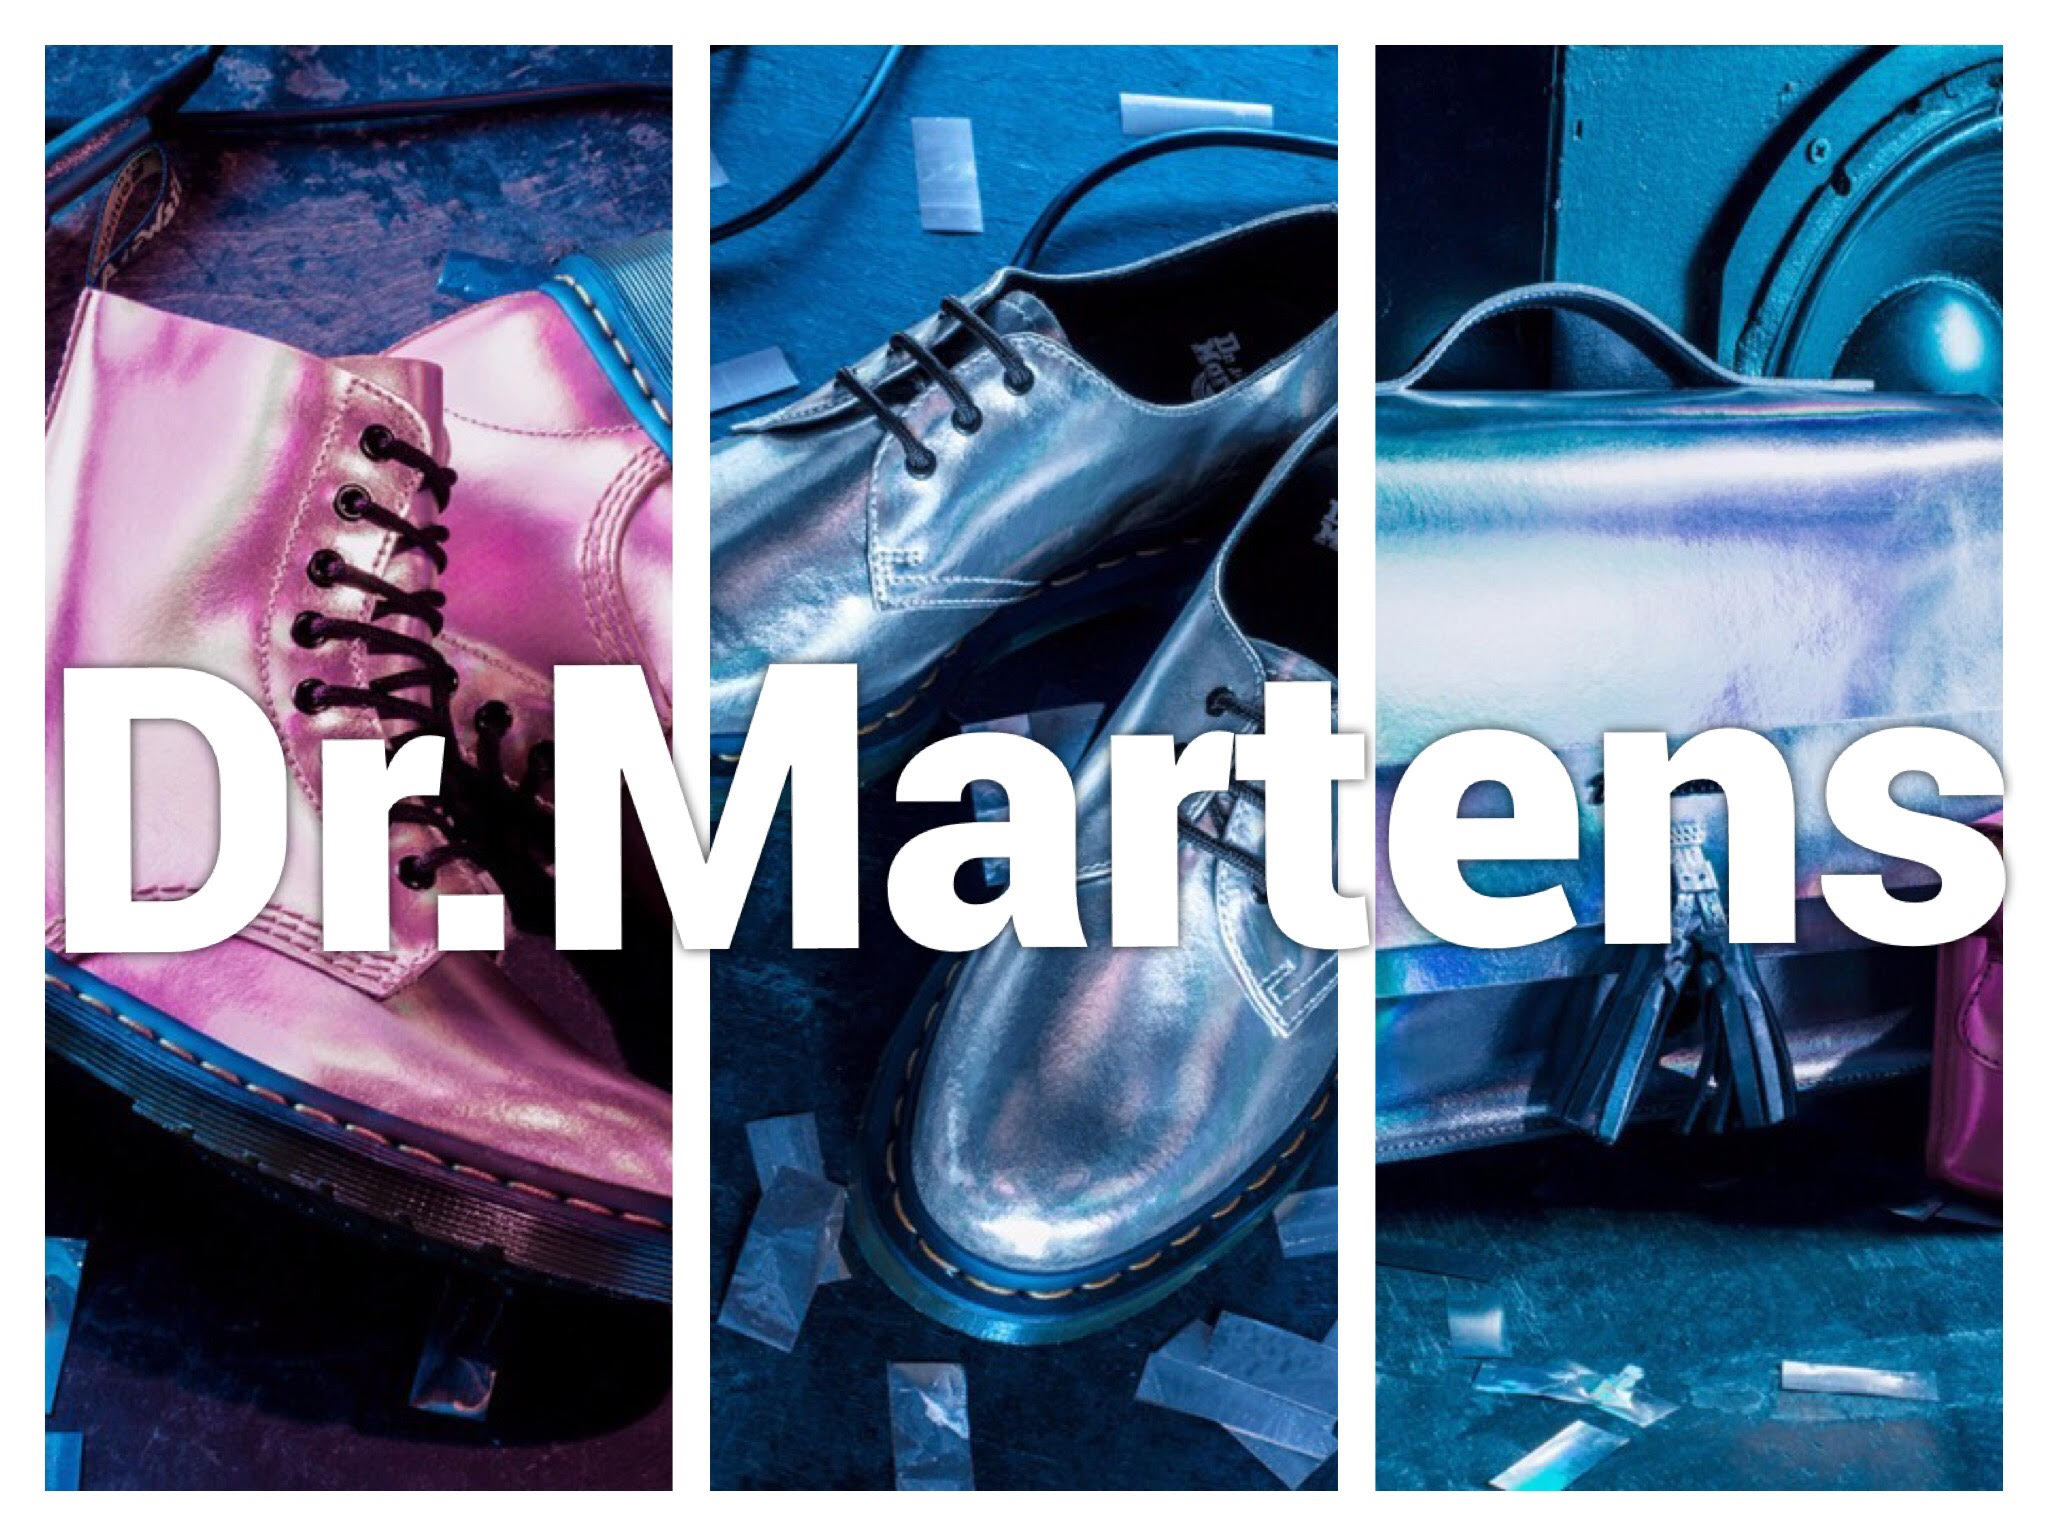 オーロラの輝き✨Dr.Martensのメタリックカラーアイテムが可愛いんです☺️🙏💕